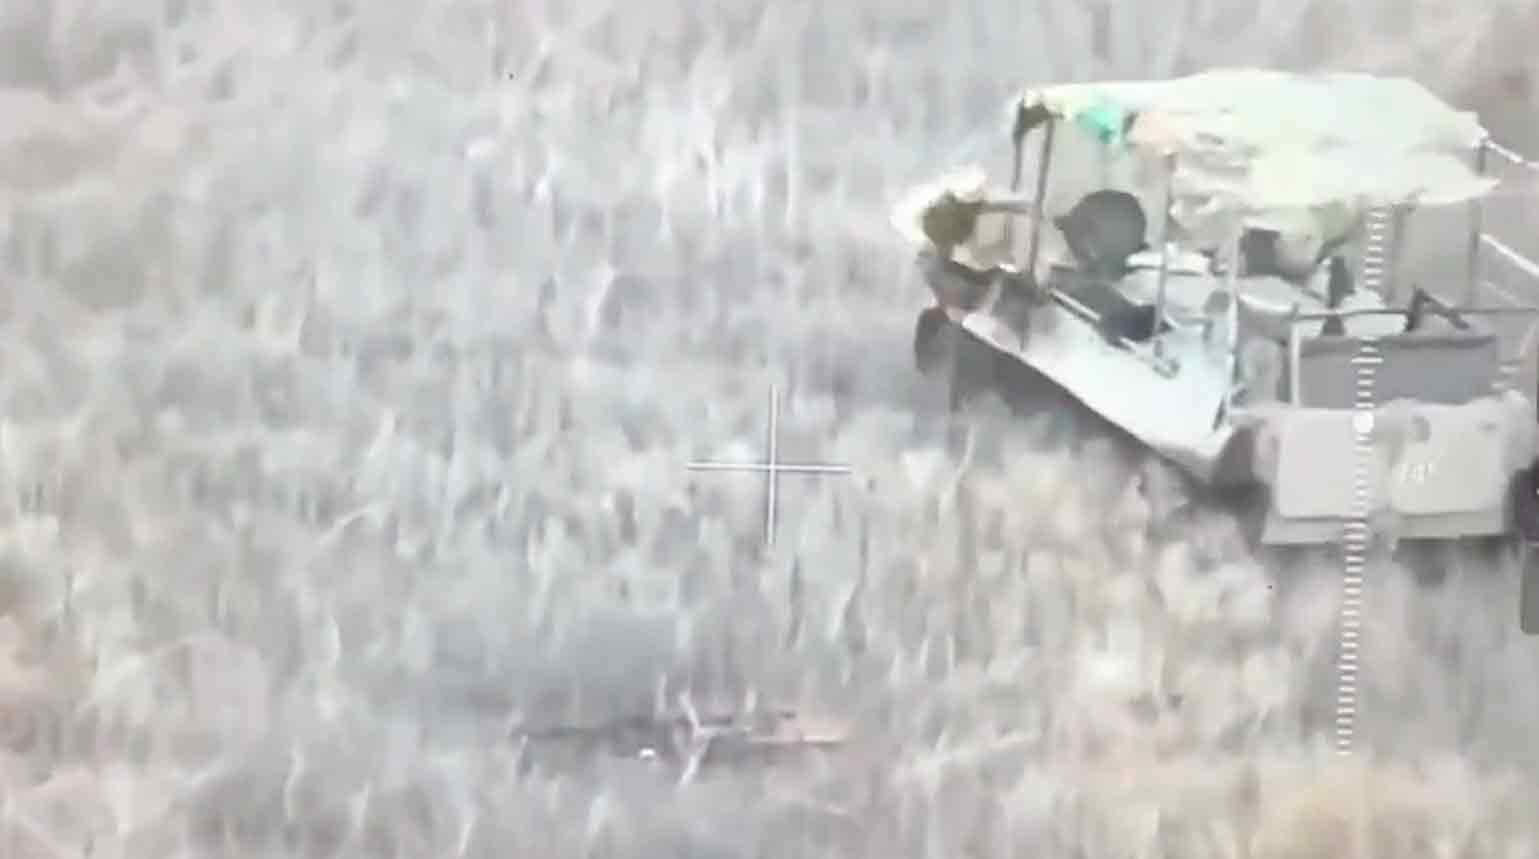 Video ukazuje obrovský výbuch způsobený 'kamikaze obrněným vozidlem' Ruska